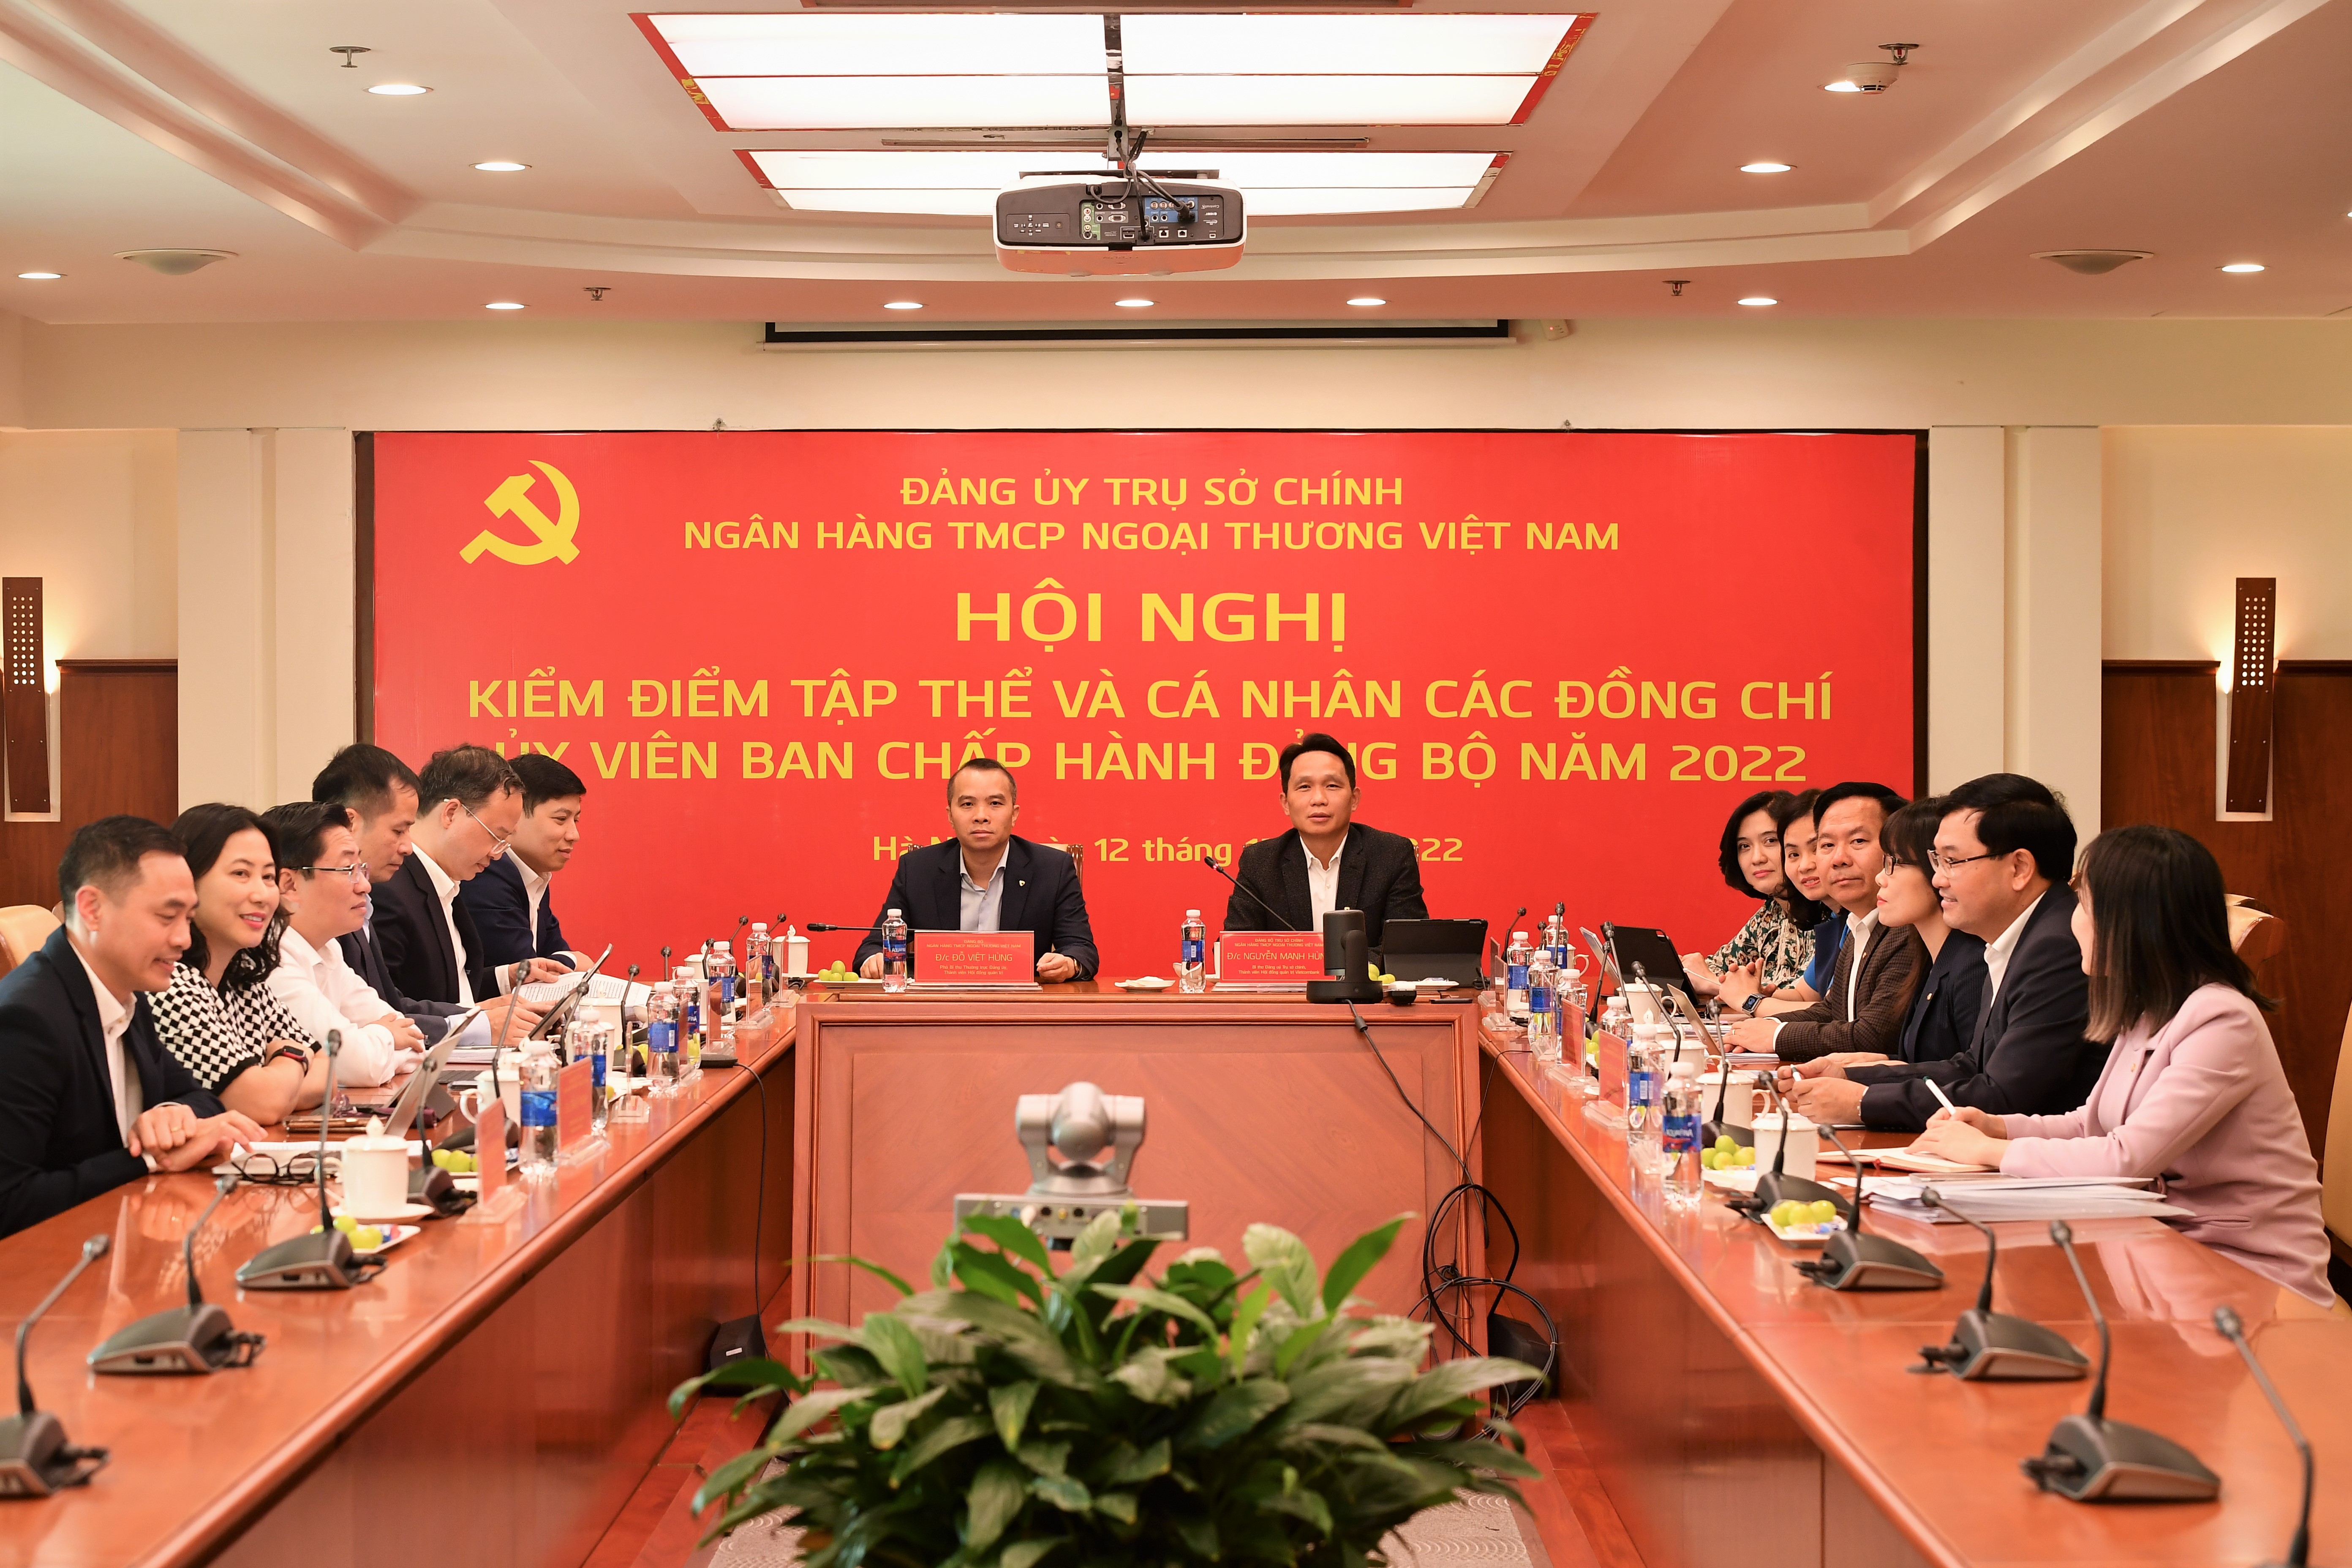 Đảng ủy TSC Vietcombank tổ chức Hội nghị kiểm điểm tập thể và cá nhân các đồng chí ủy viên Ban Chấp hành đảng bộ năm 2022